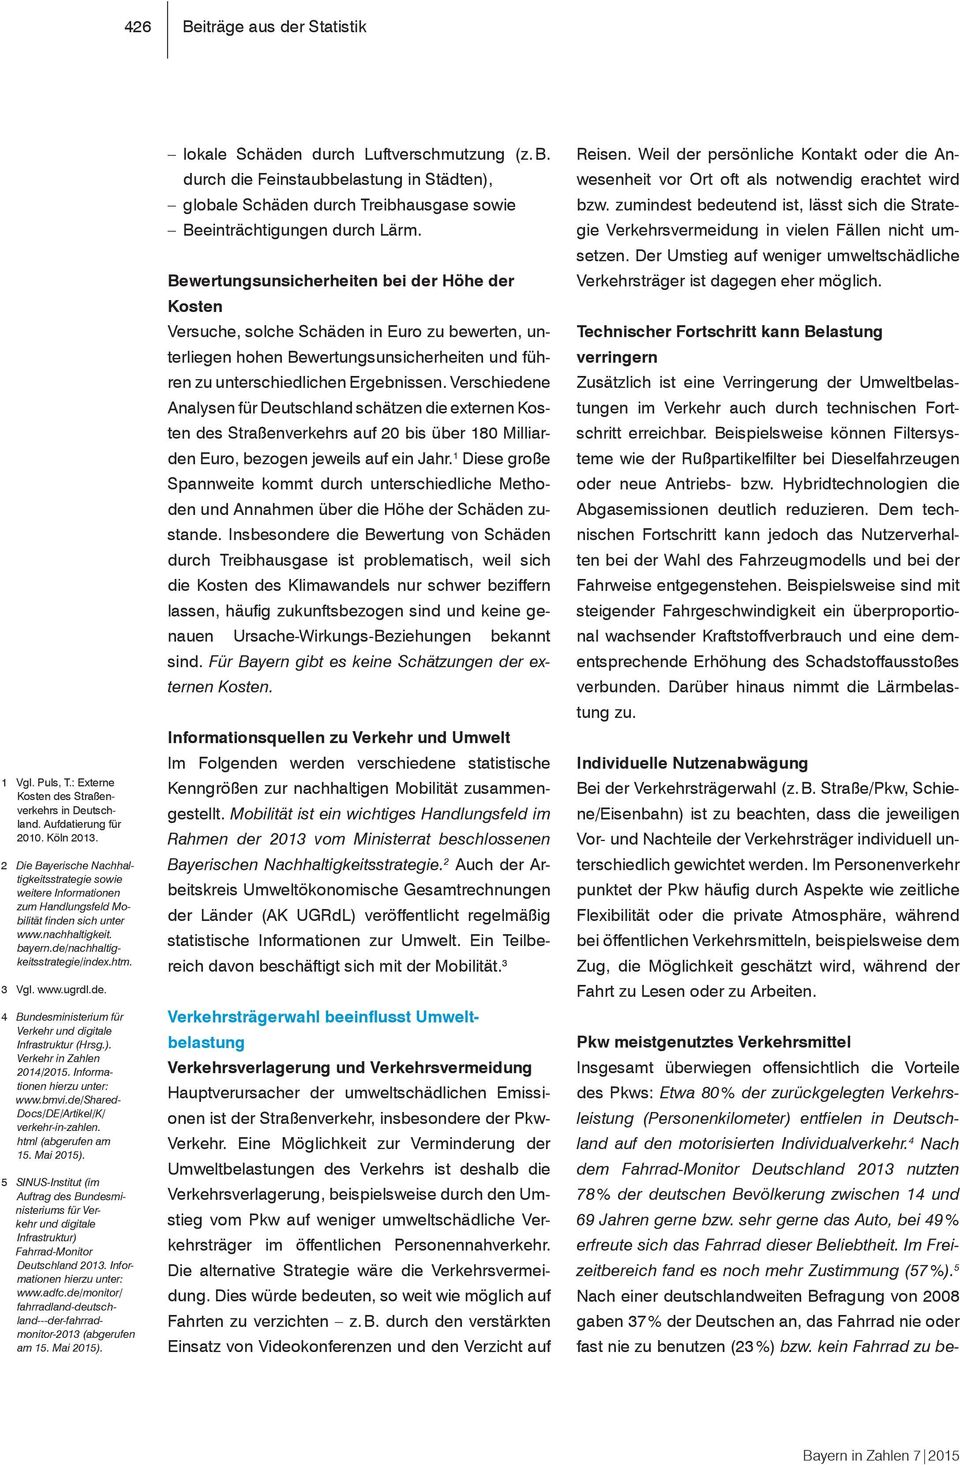 de. 4 Bundesministerium für Verkehr und digitale Infrastruktur (Hrsg.). Verkehr in Zahlen 2014/2015. Informationen hierzu unter: www.bmvi.de/shared- Docs/DE/Artikel/K/ verkehr-in-zahlen.